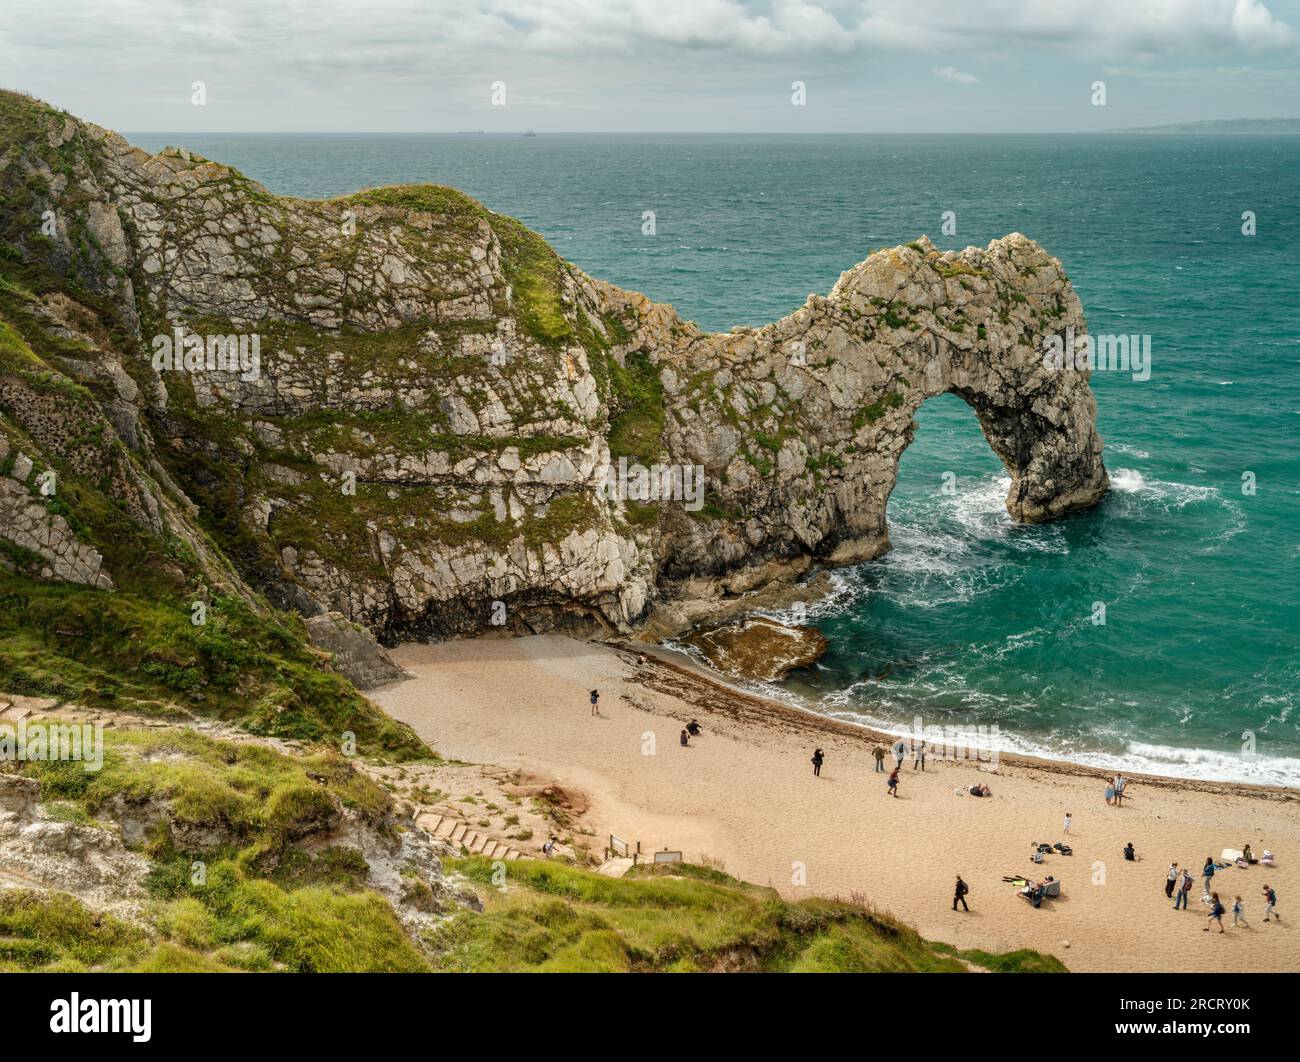 Durdle Door est une arche de calcaire naturel située sur la côte jurassique près de Lulworth dans le Dorset, en Angleterre. Banque D'Images